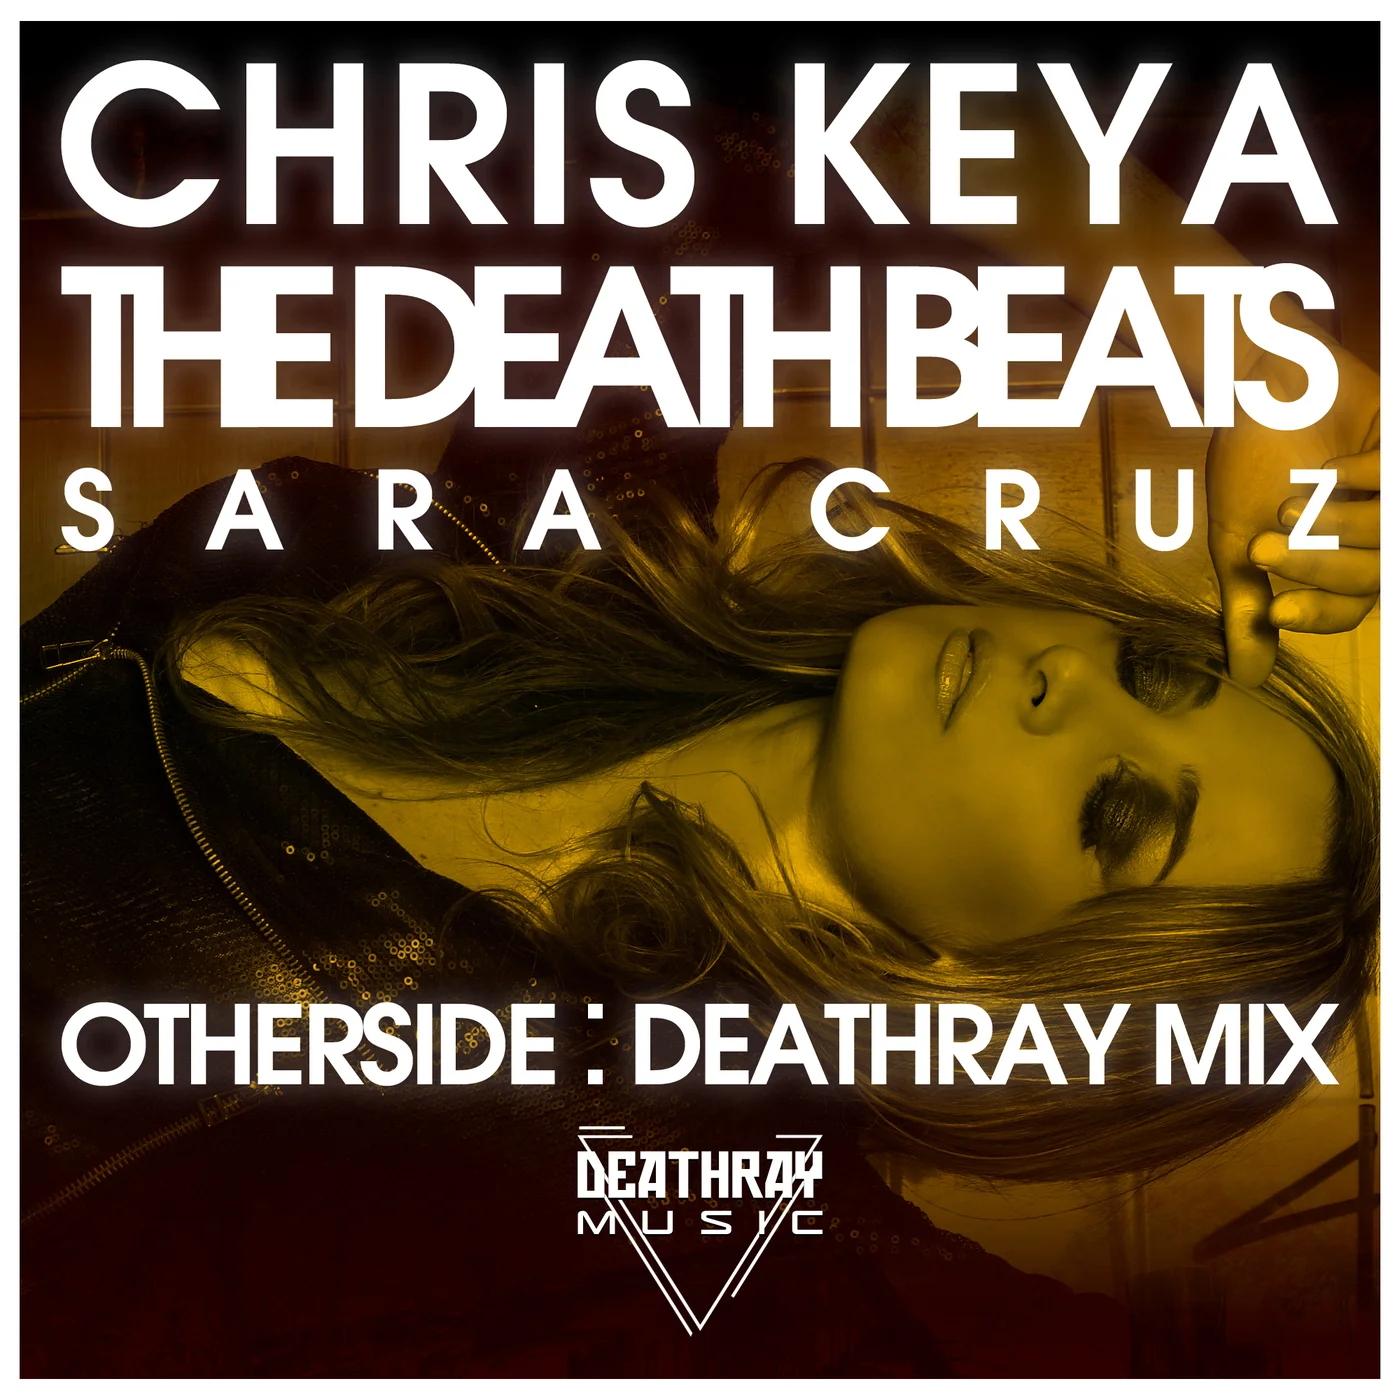 Chris Keya x The Death Beats x Sara Cruz – Otherside (Deathray Mix)